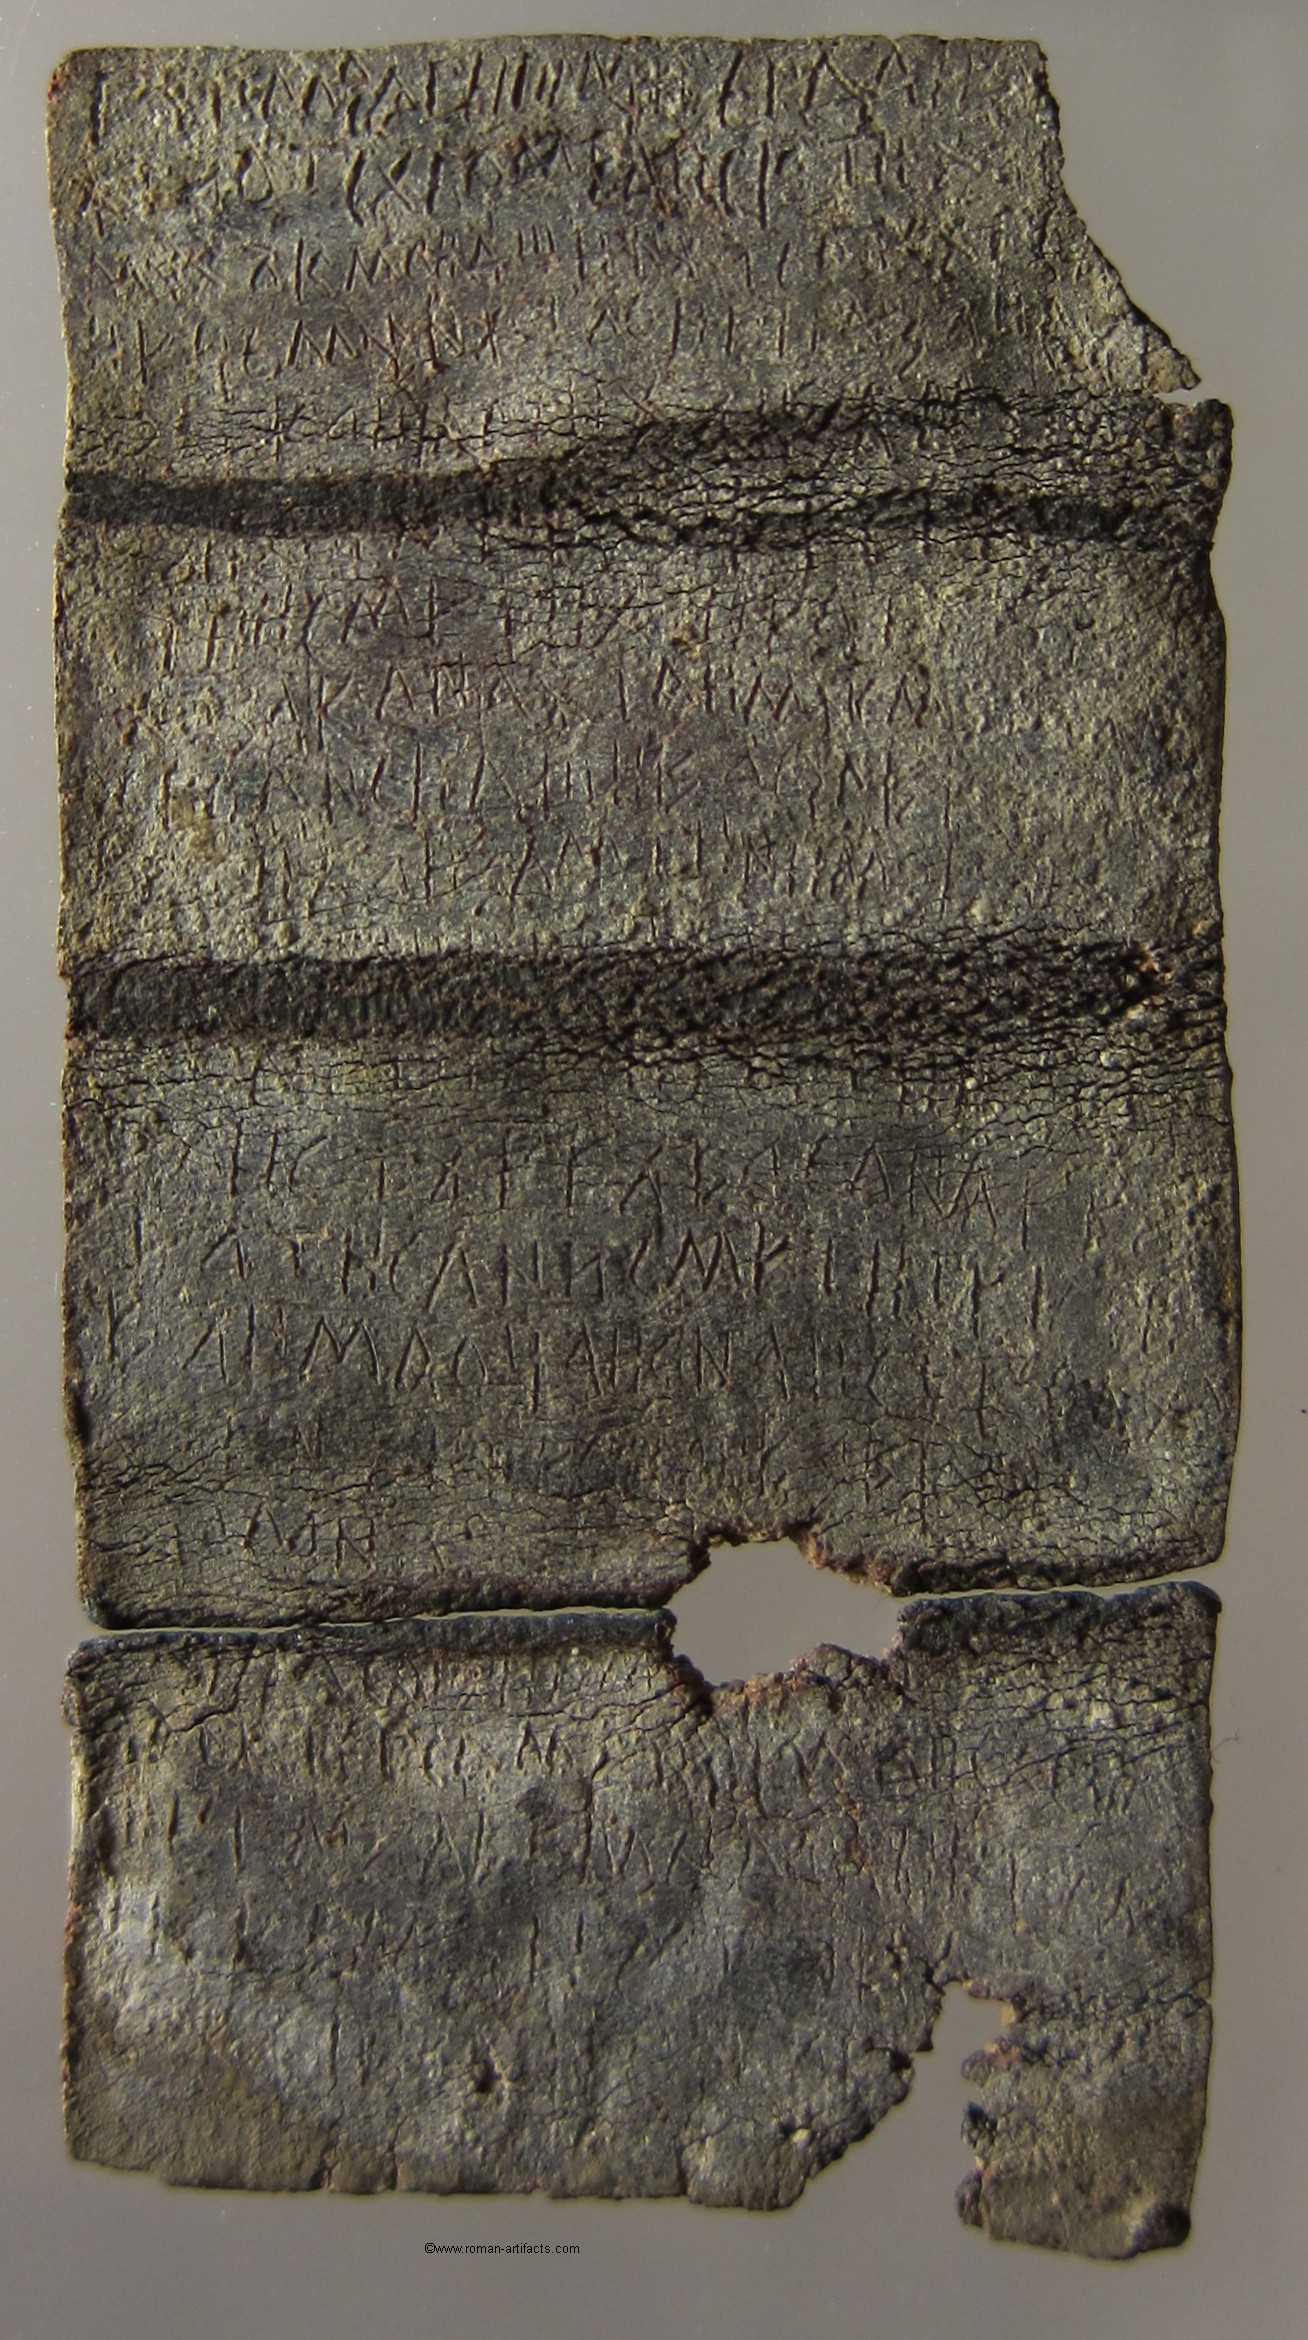 Roman Curse Tablet